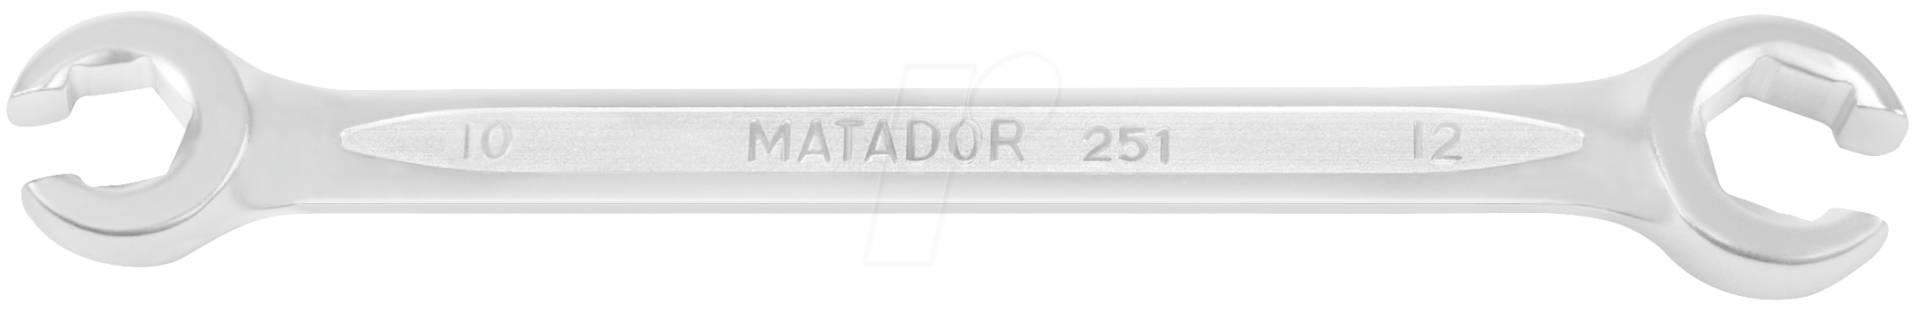 MAT 0251 3032 - Ringschlüssel, offen, SW 30 / 32, DIN 3118 von Matador